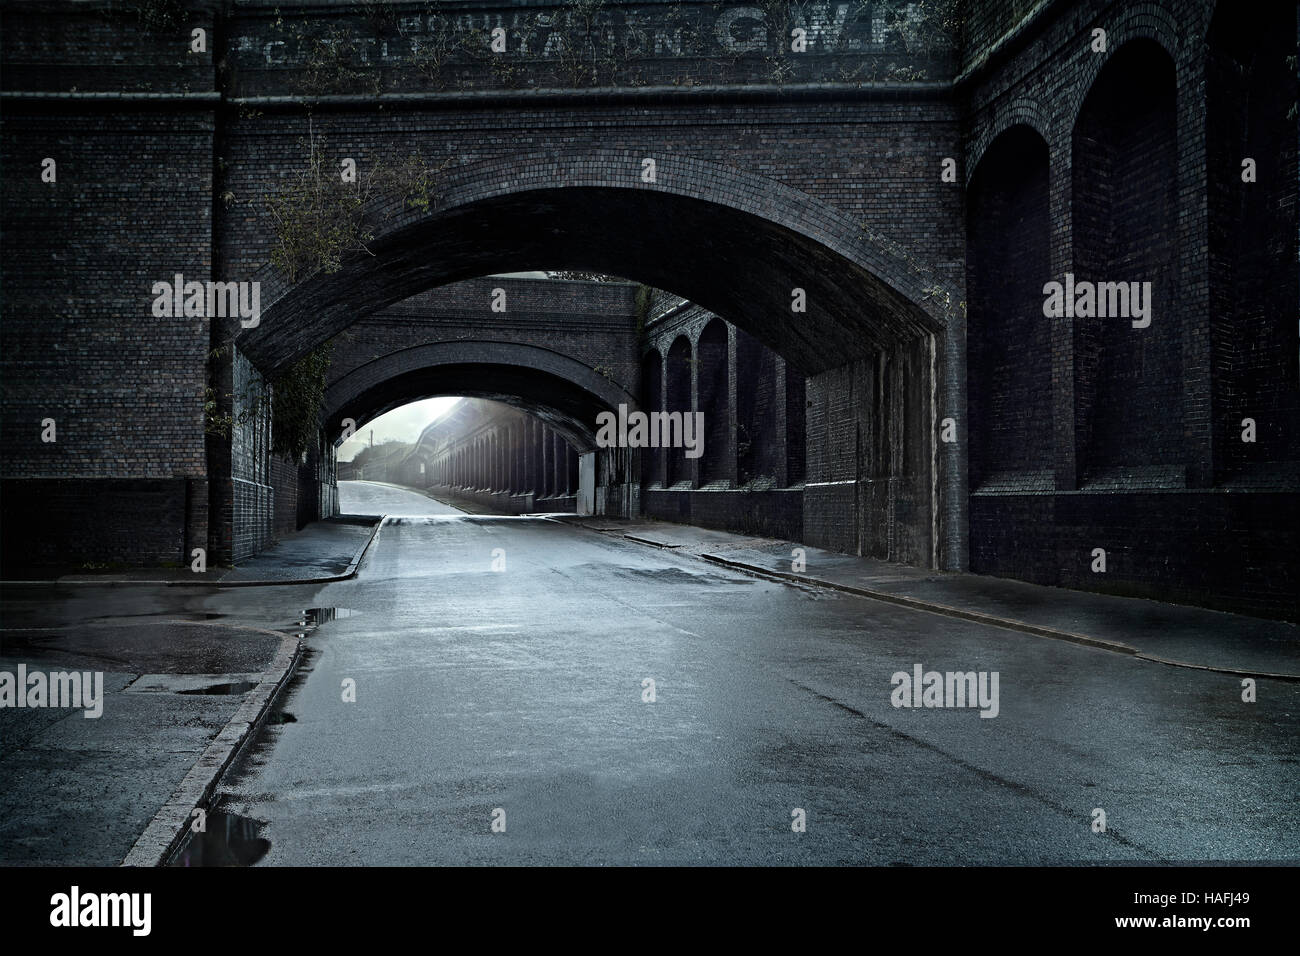 Scène Edwardian/ Victorian Industrial Street, viaduc et pont, rues humides après la pluie, scène de rue pour l'arrière-plan. Viaduc de Birmingham Banque D'Images